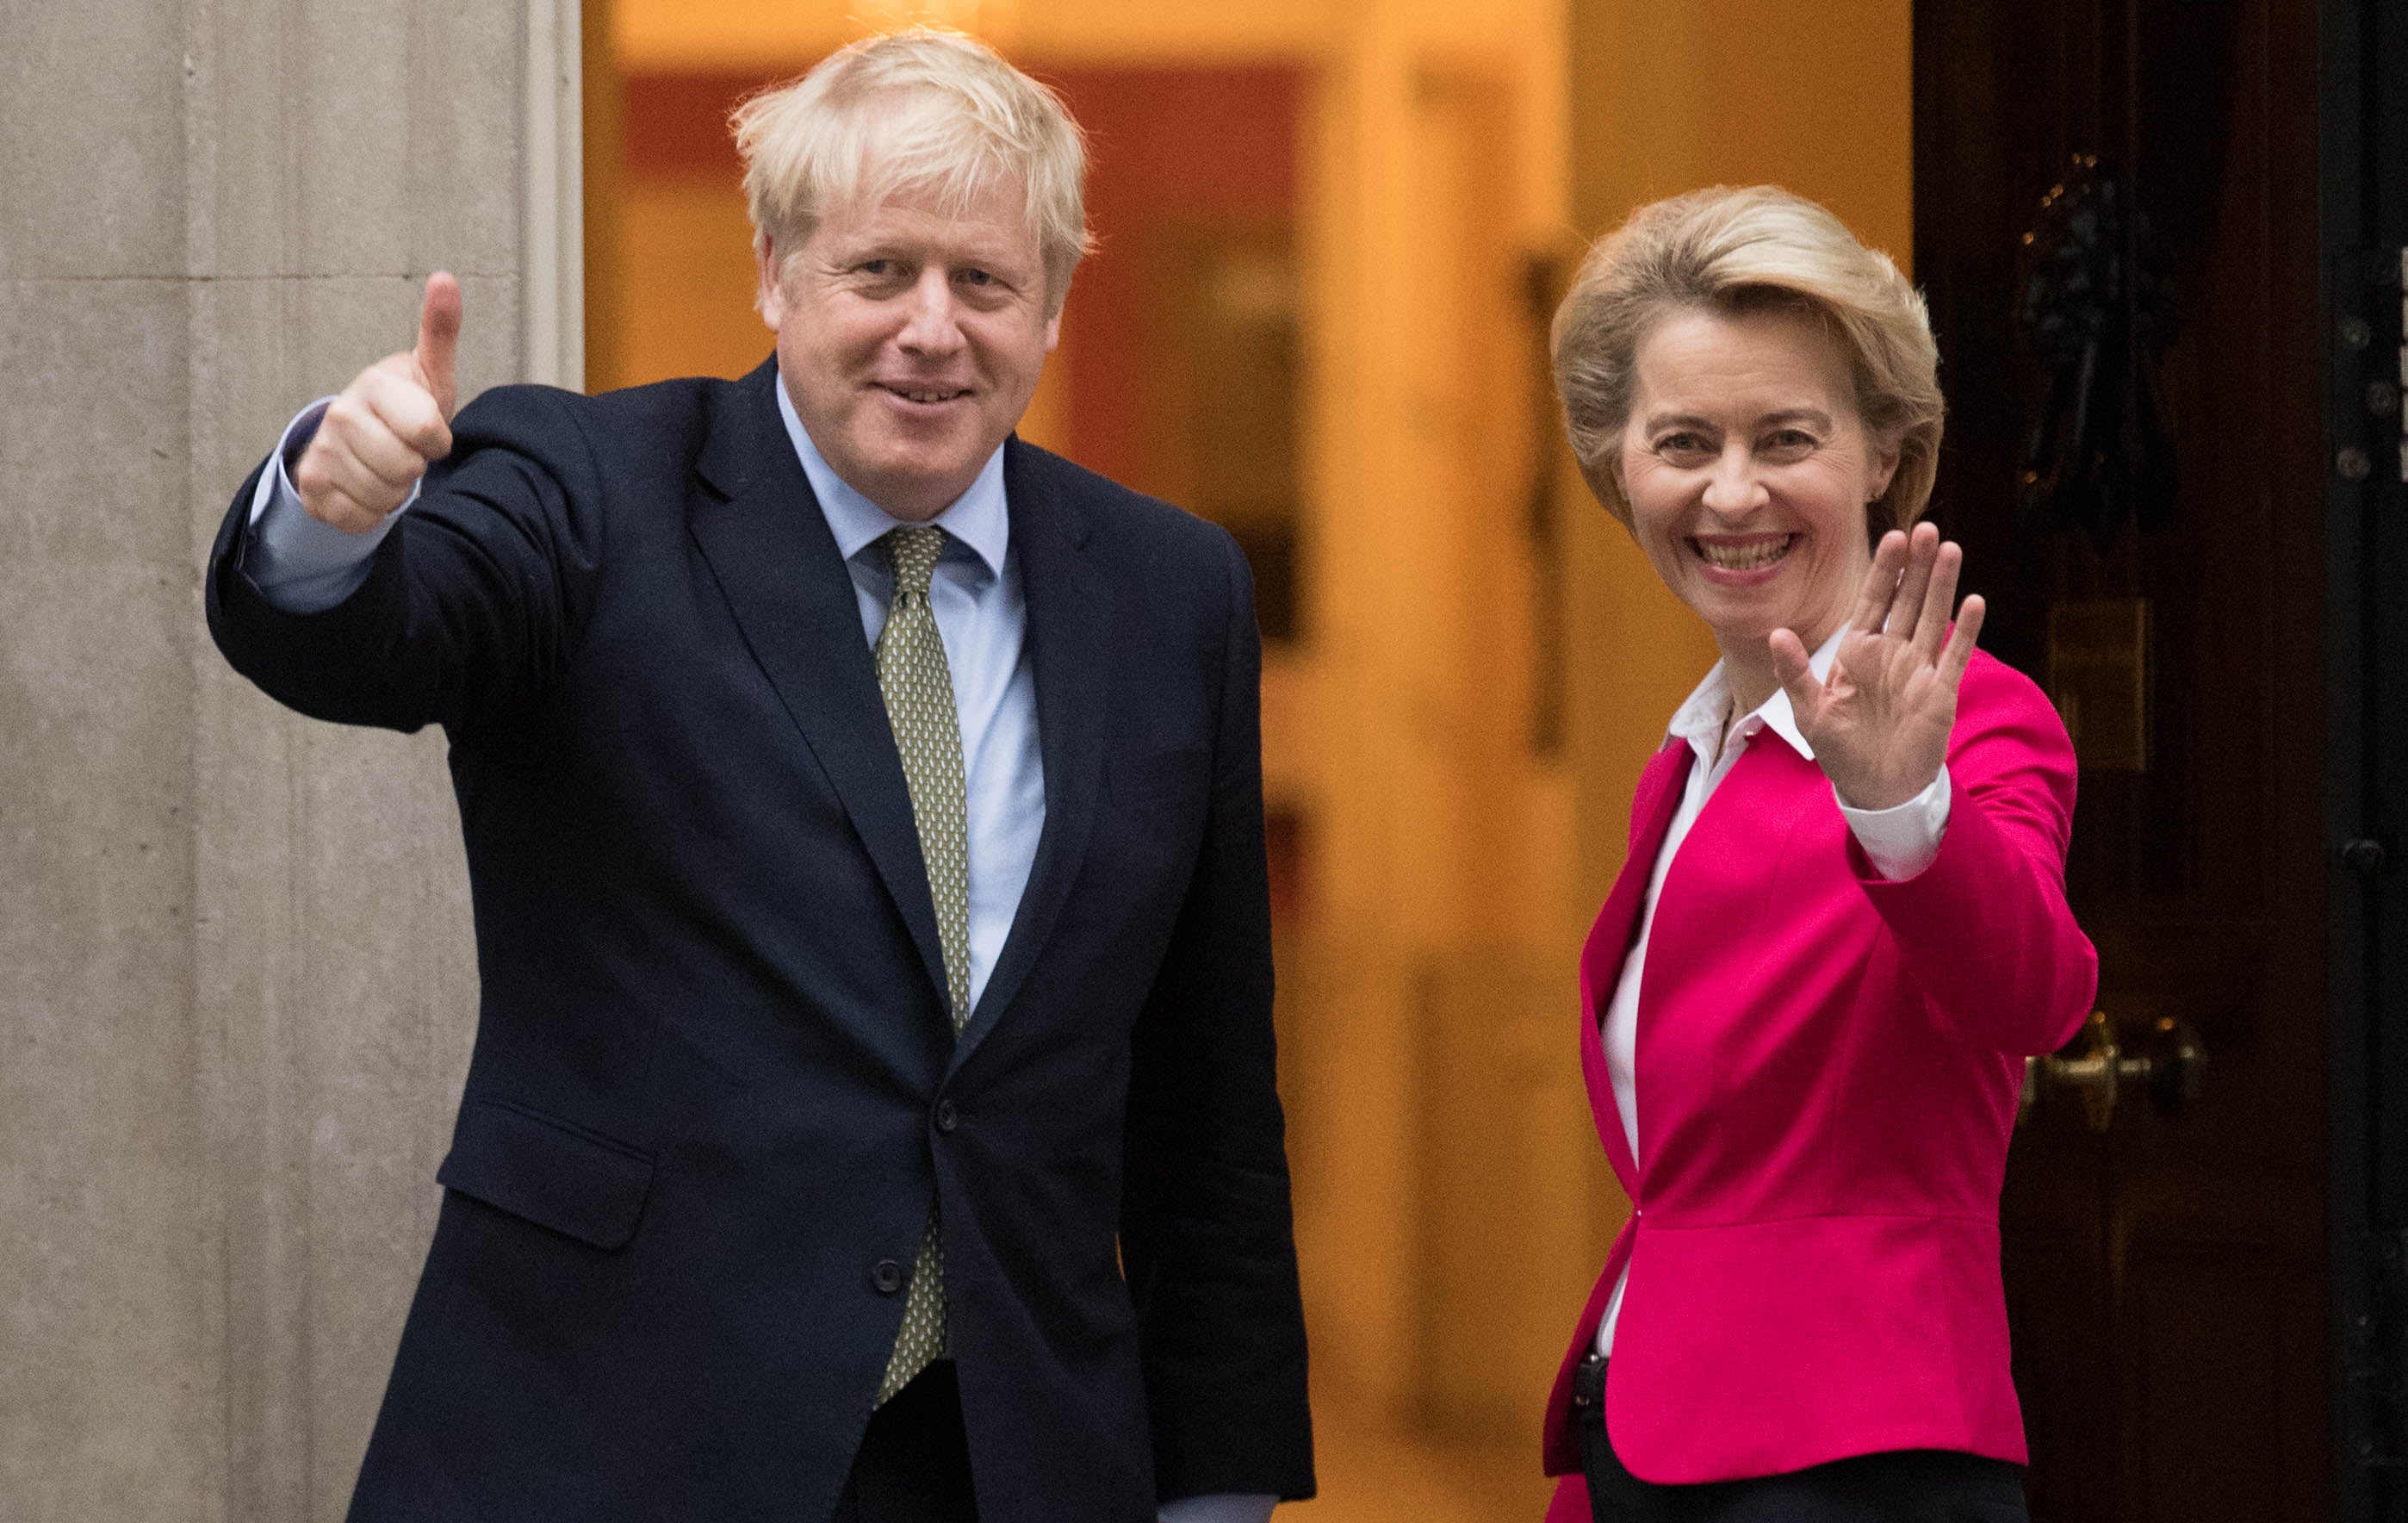 Boris Johnson and Ursula von der Leyen in happier times (January 2020)